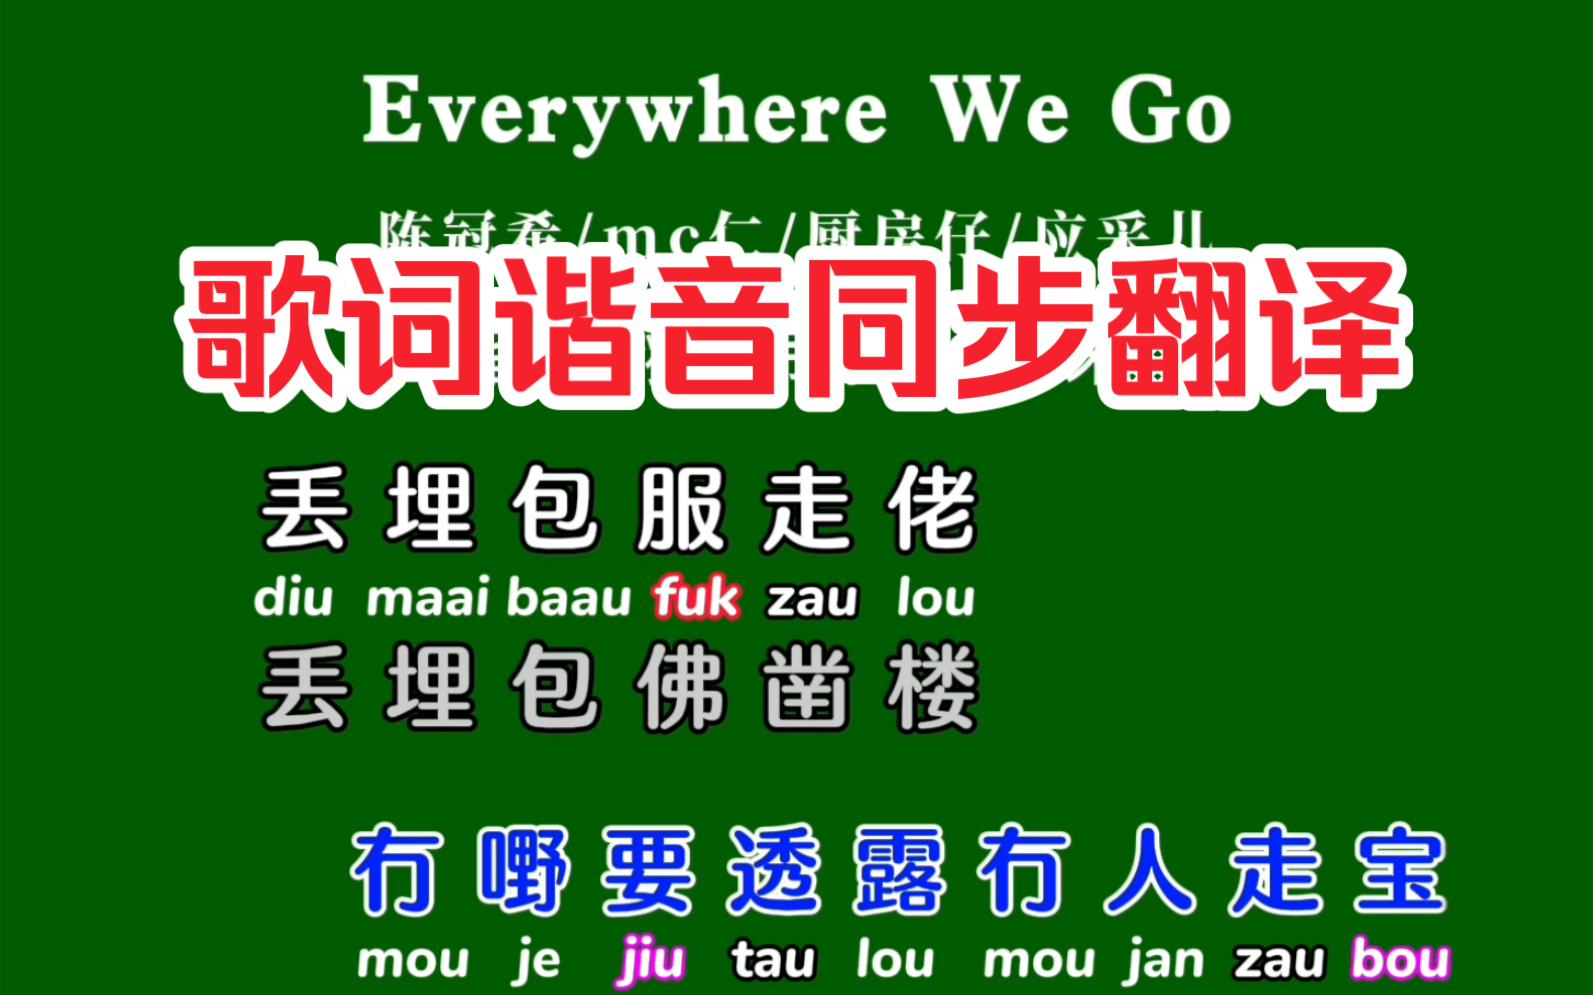 粤语歌《Ererywhere we go》卡拉OK字幕谐音同步翻译带粤拼注音